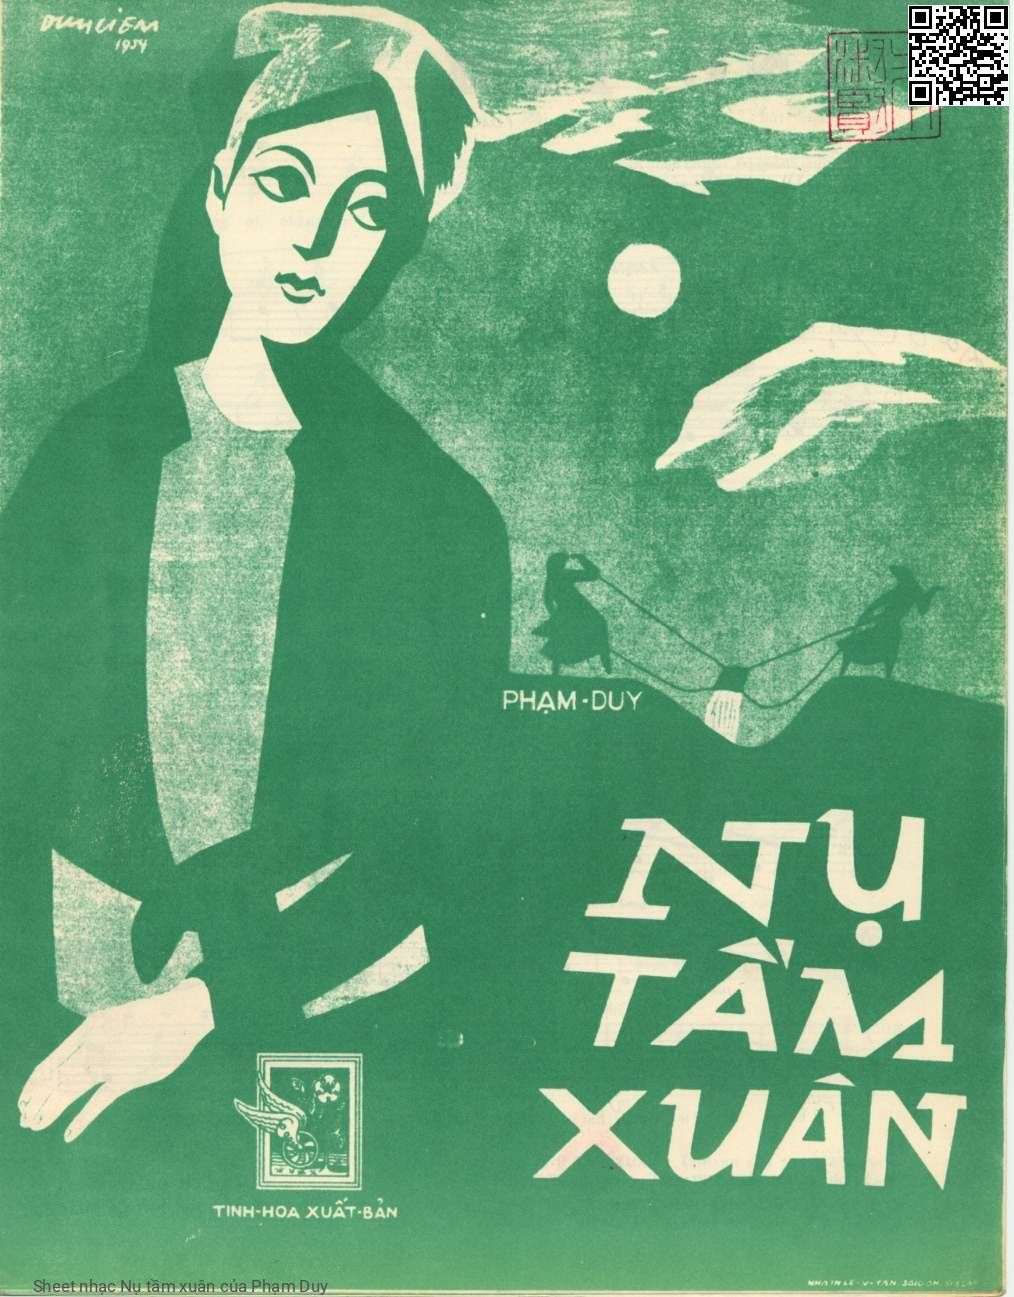 Sheet nhạc Nụ tầm xuân - Phạm Duy